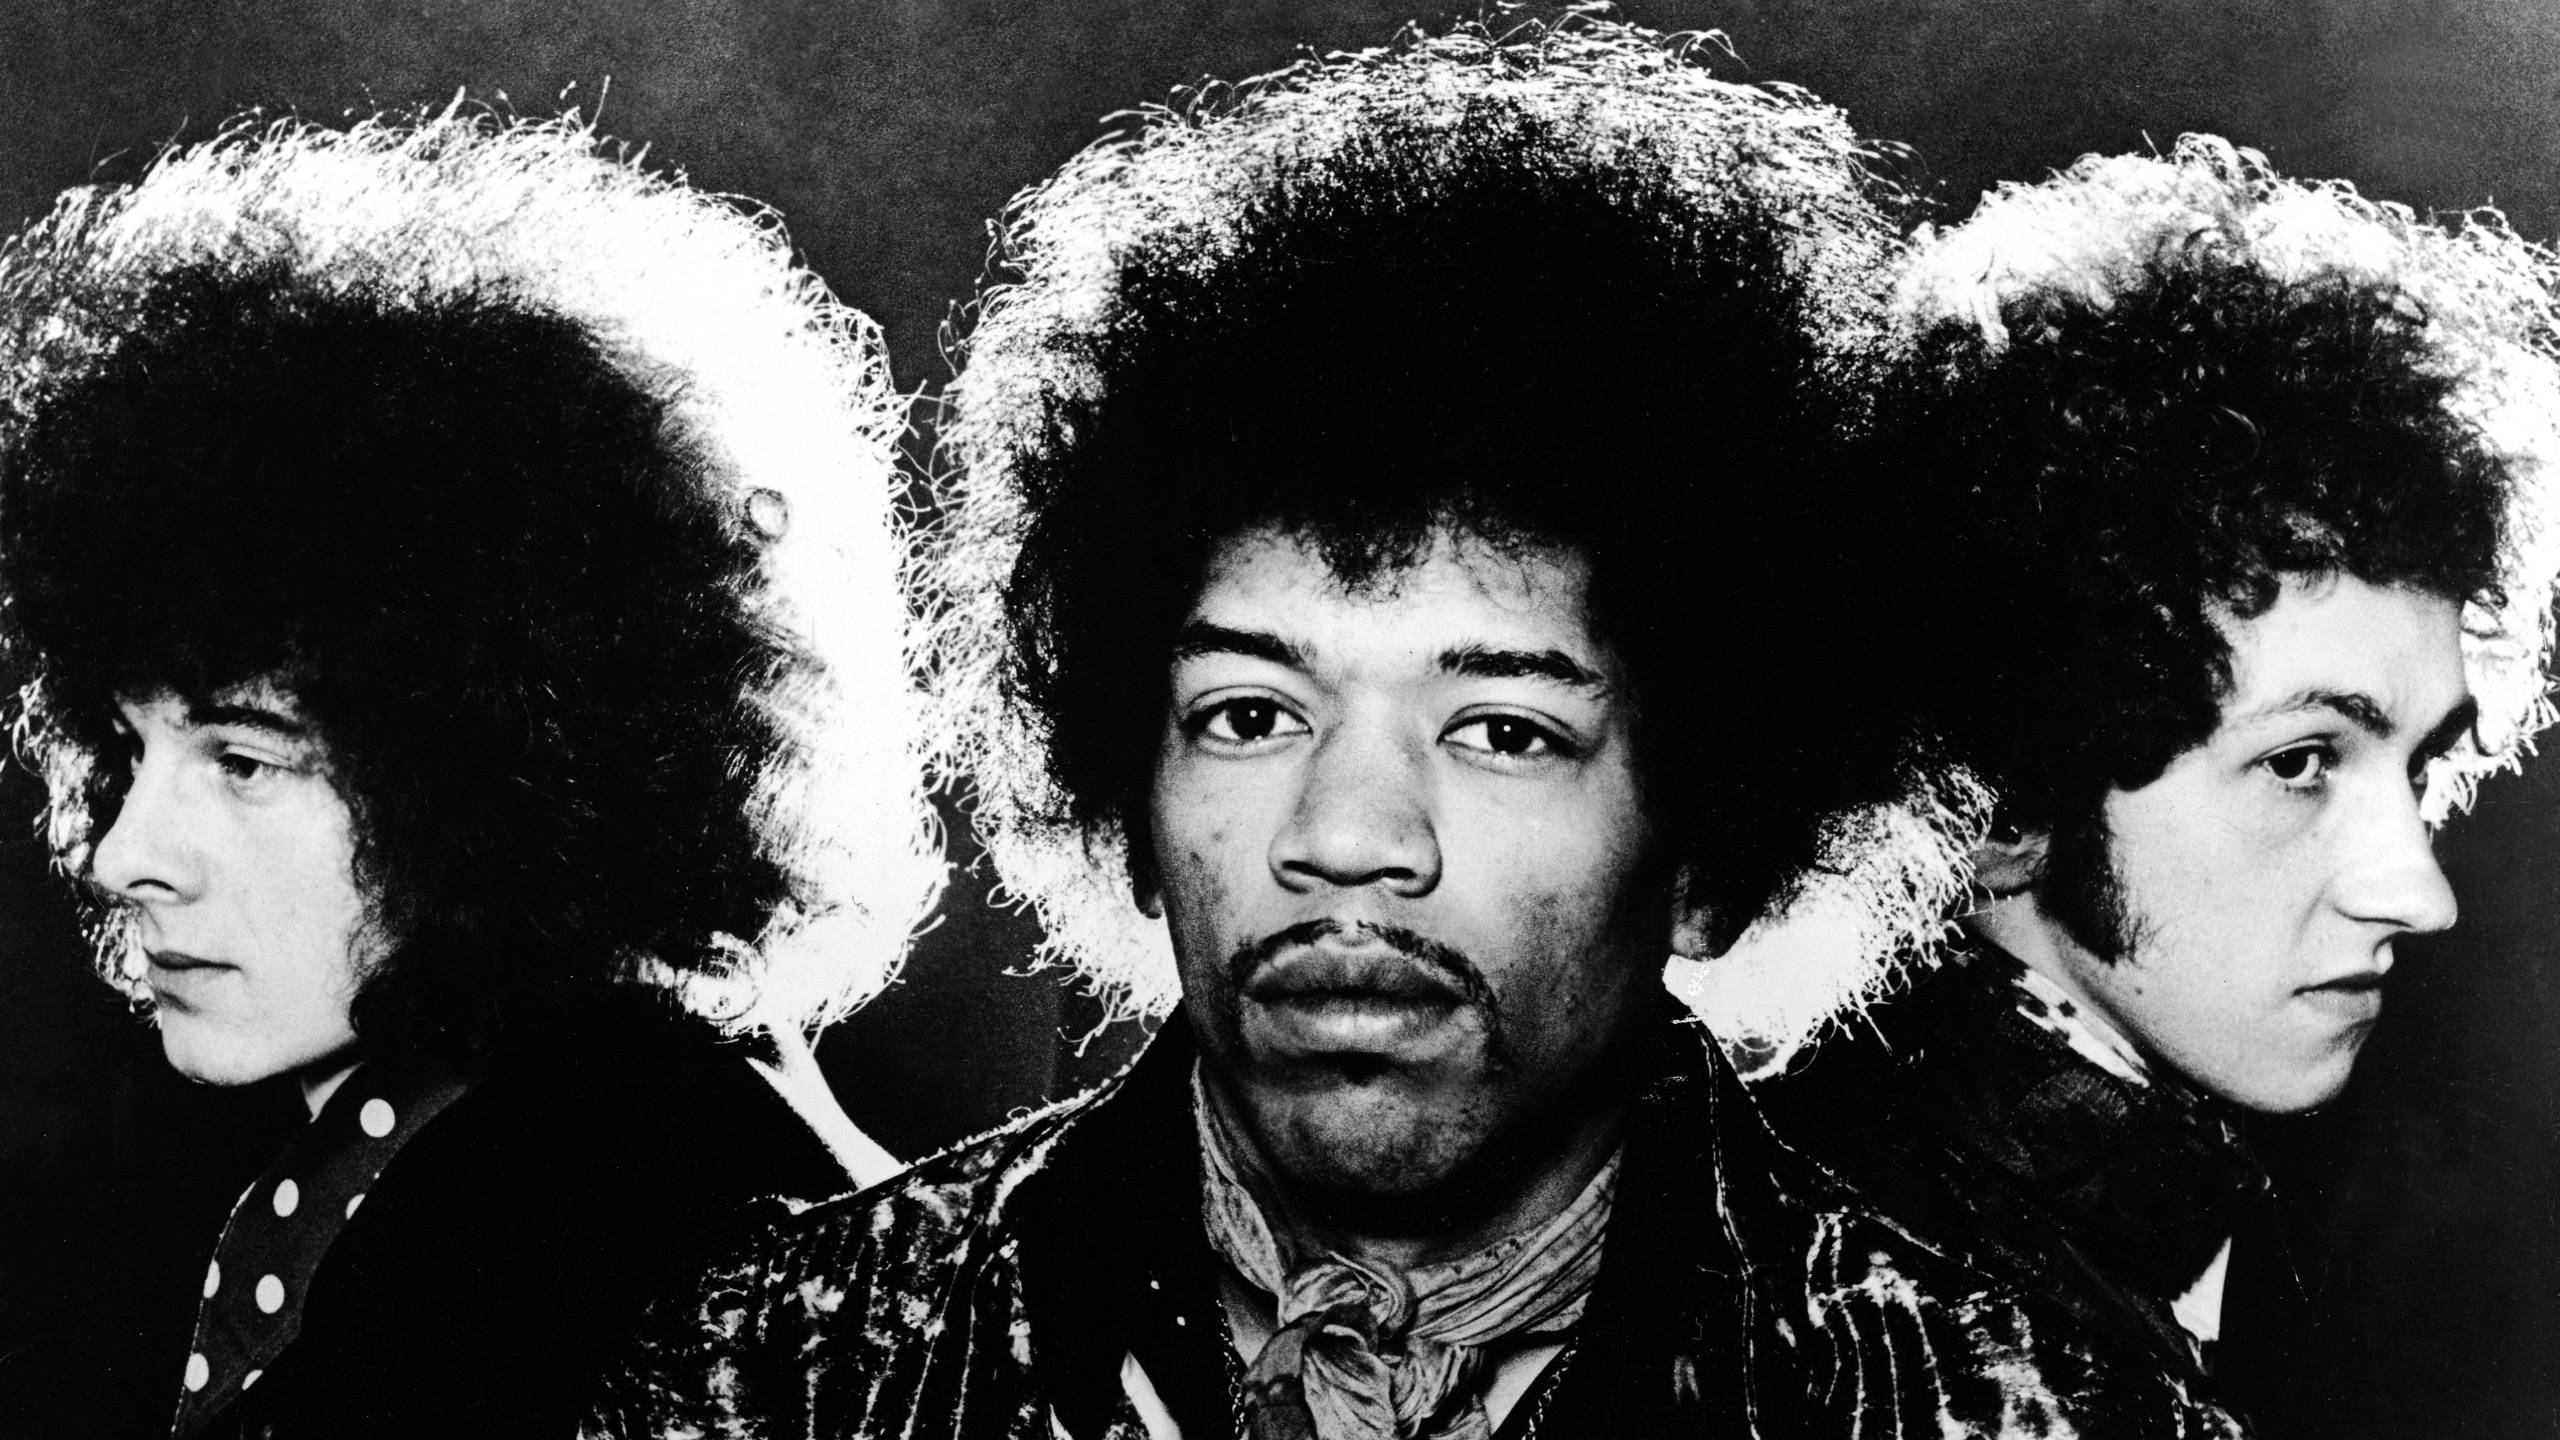 Jimi Hendrix Experience: Live-Mitschnitt des Hollywood Bowl Konzerts vom 18. August 1967 wird veröffentlicht